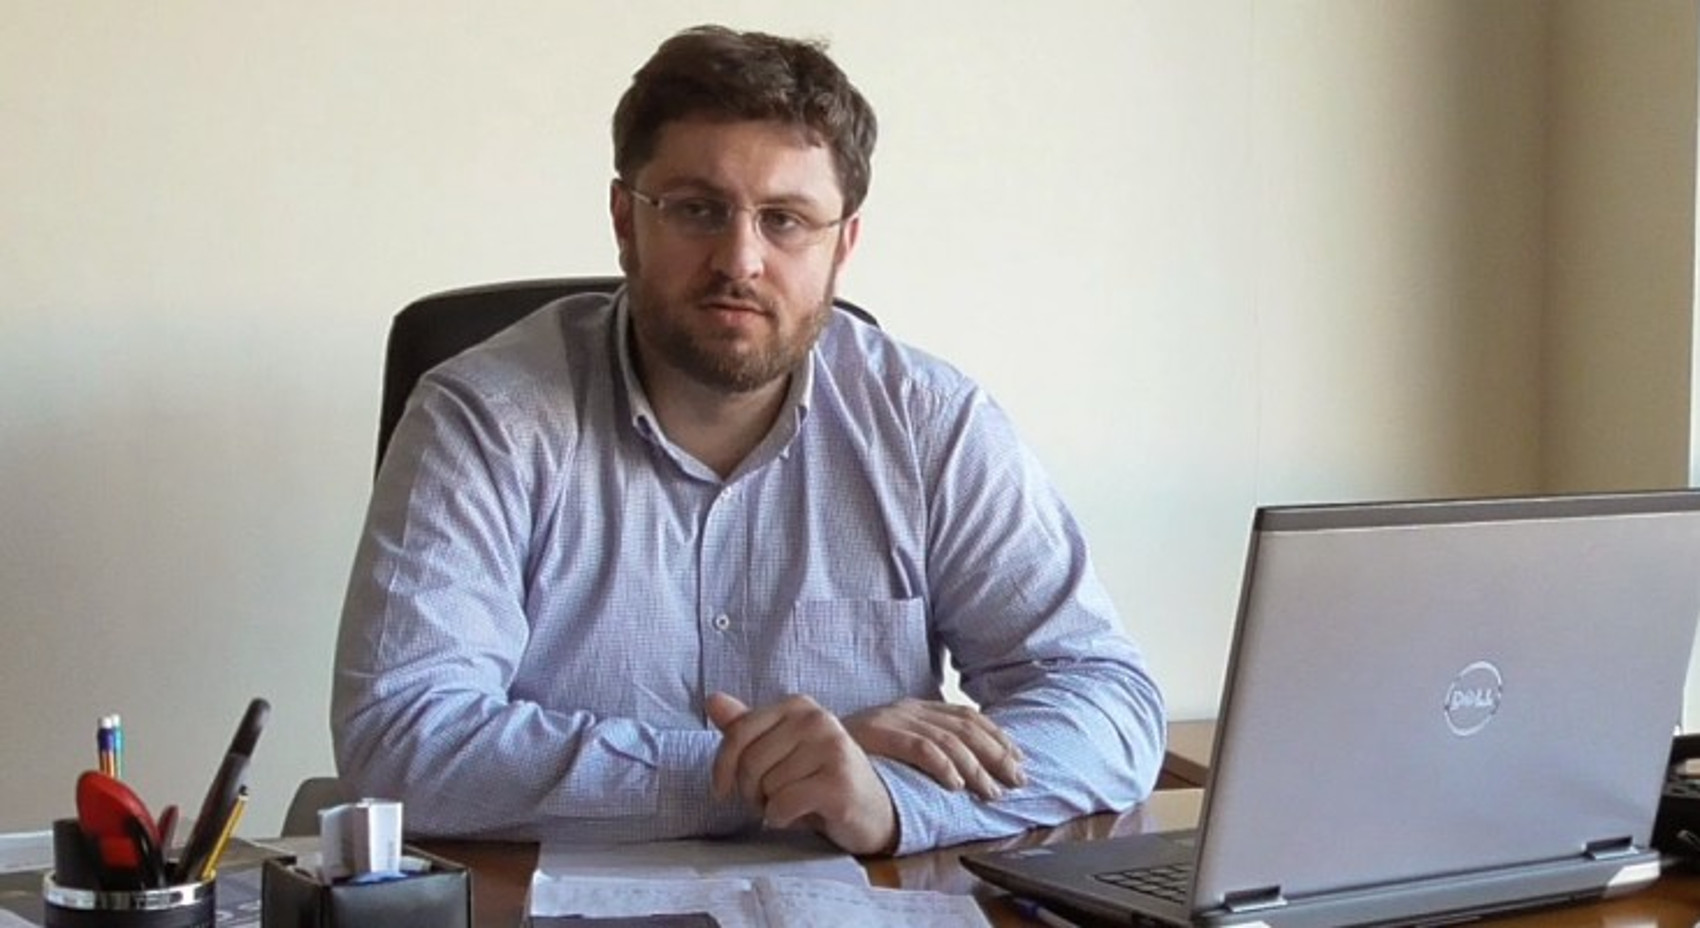 Ζαχαριάδης: «Πολύ καλός ΥΠΕΞ ο Κοτζιάς – Χειρίστηκε τα εθνικά θέματα με πατριωτική ευθύνη» (ηχητικό)